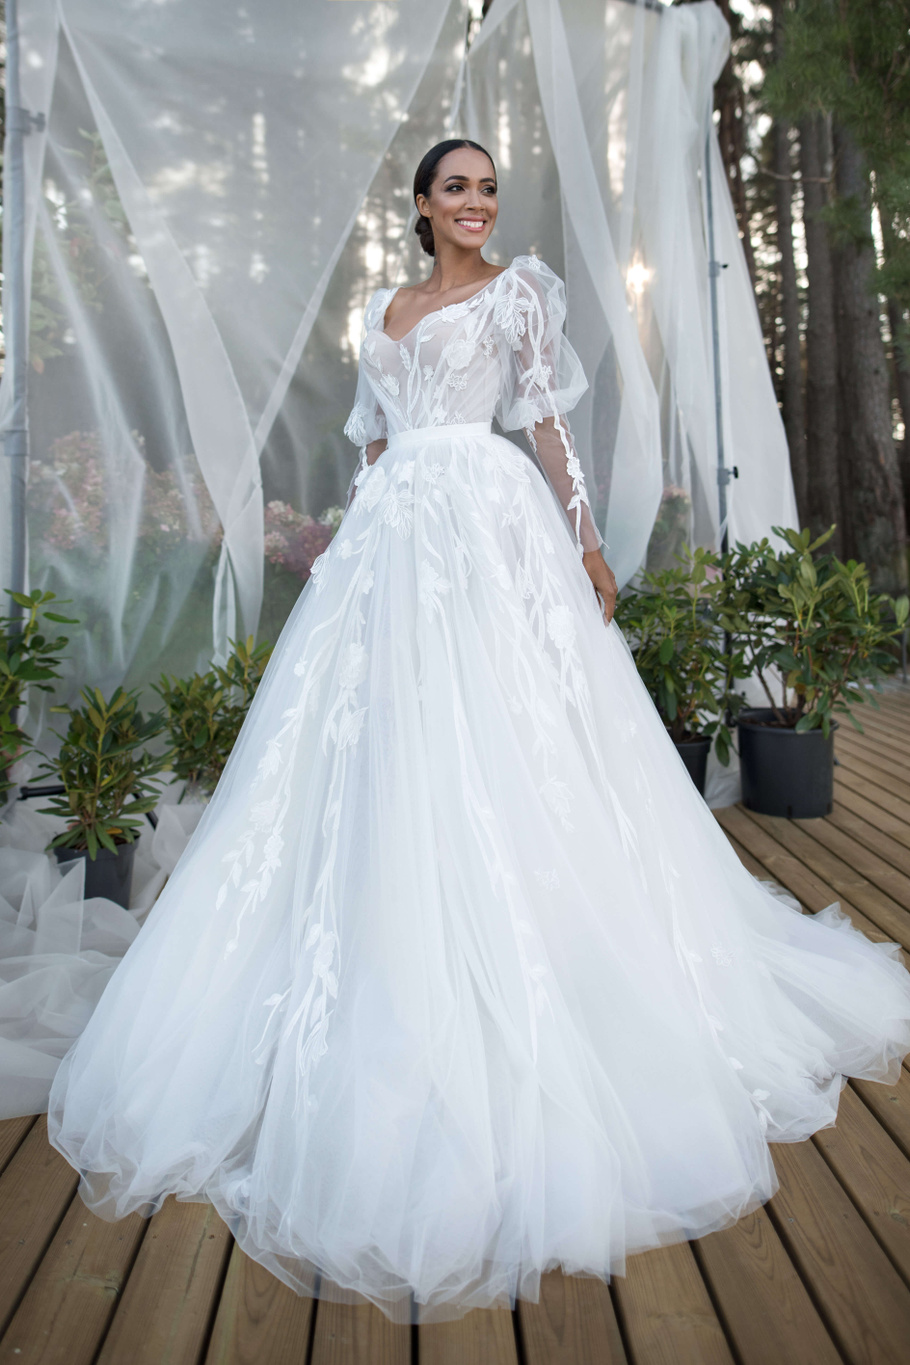 Купить свадебное платье «Тайлер» Бламмо Биамо из коллекции Нимфа 2020 года в Екатеринбурге